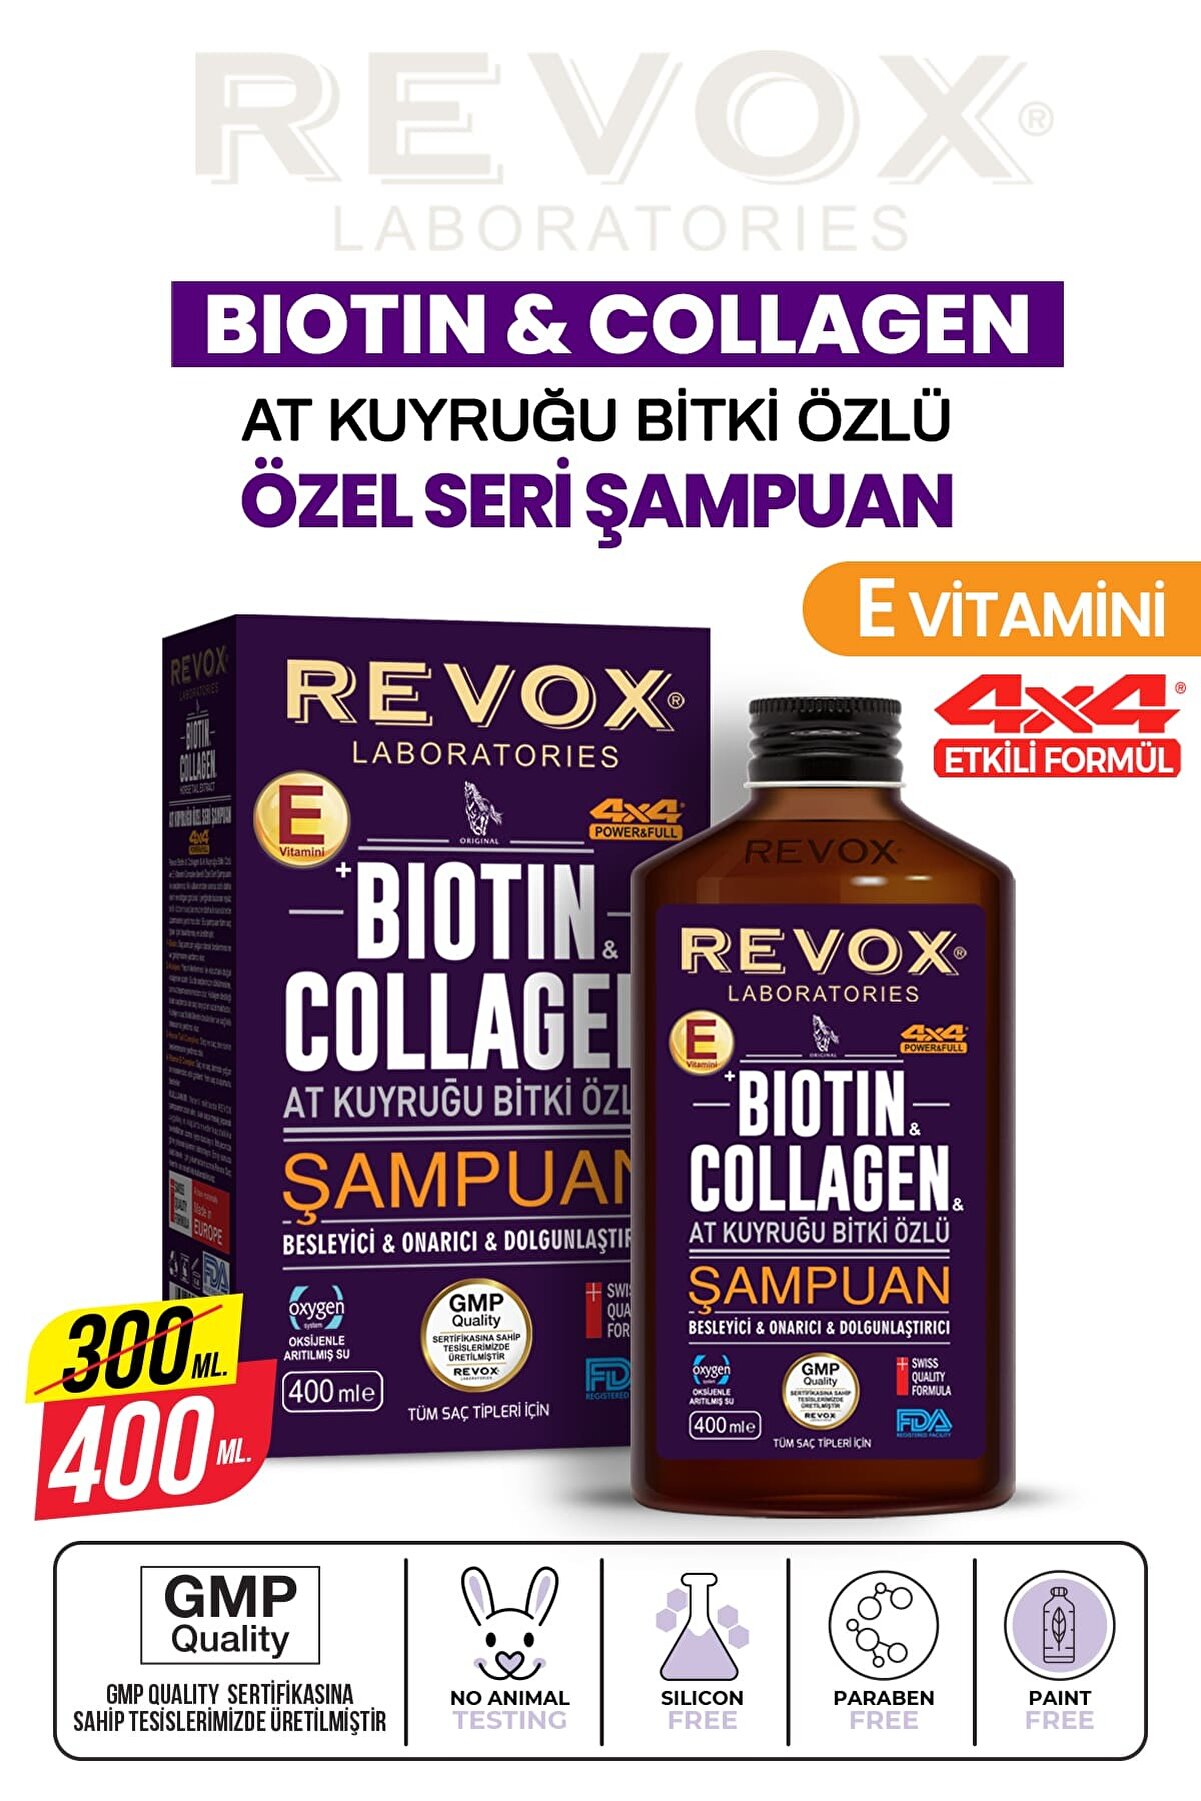 Revox Biotin Collagen At Kuyruğu Bitki Özlü Dökülme Karşıtı, Hızlı Uzama Etkili Dolgunlaştırıcı Şampuan